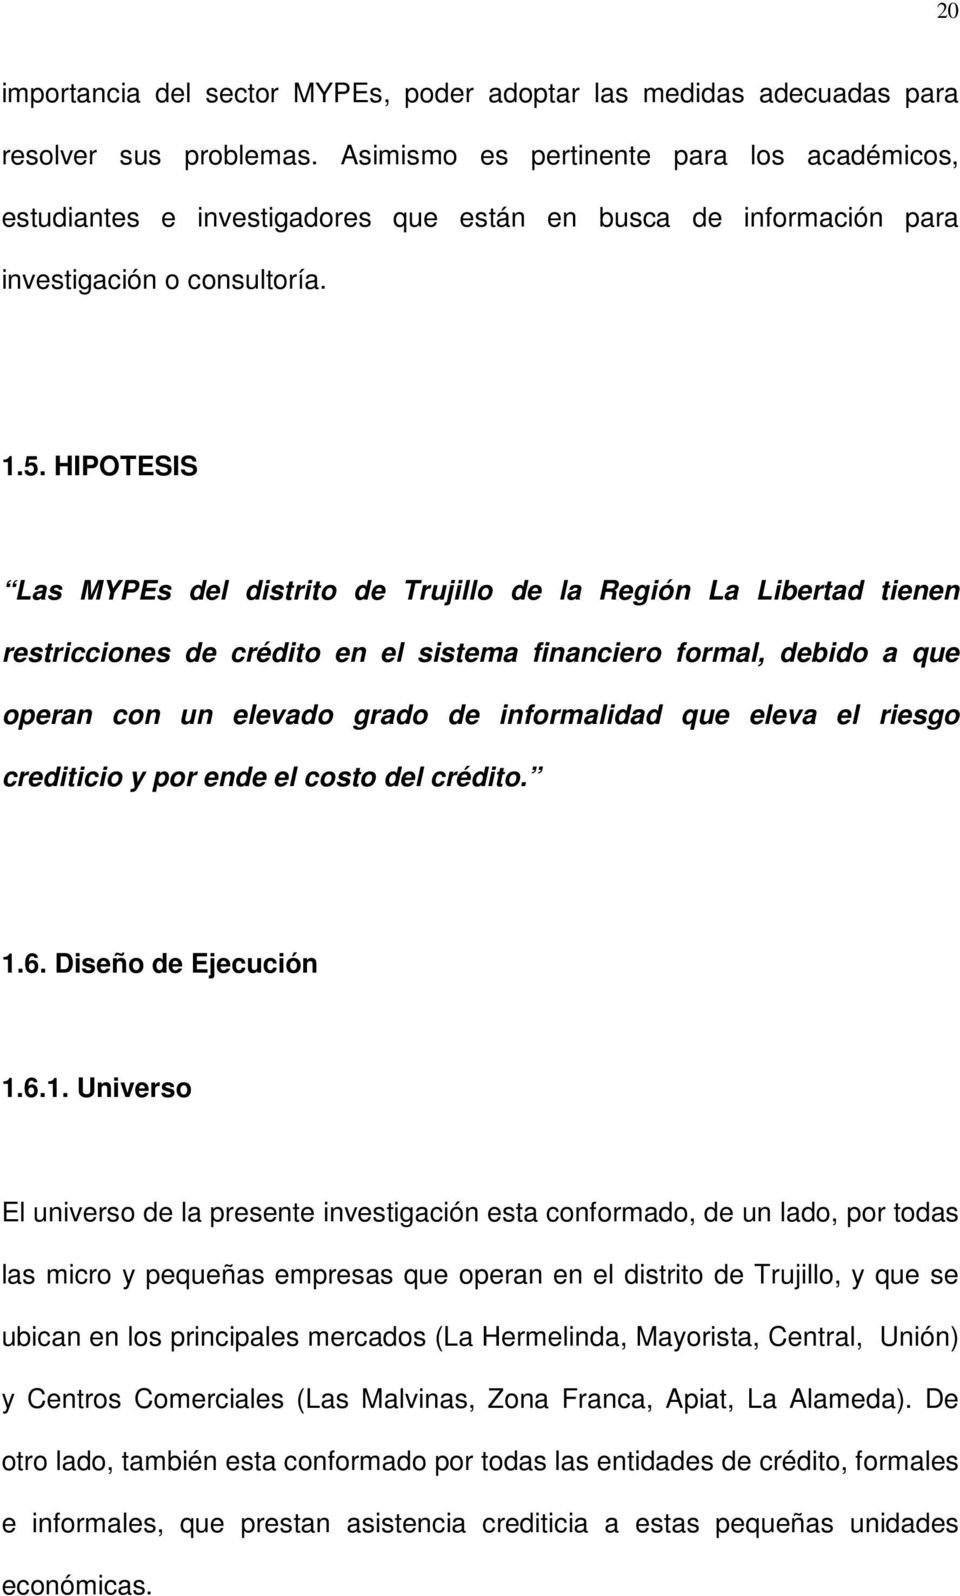 HIPOTESIS Las MYPEs del distrito de Trujillo de la Región La Libertad tienen restricciones de crédito en el sistema financiero formal, debido a que operan con un elevado grado de informalidad que